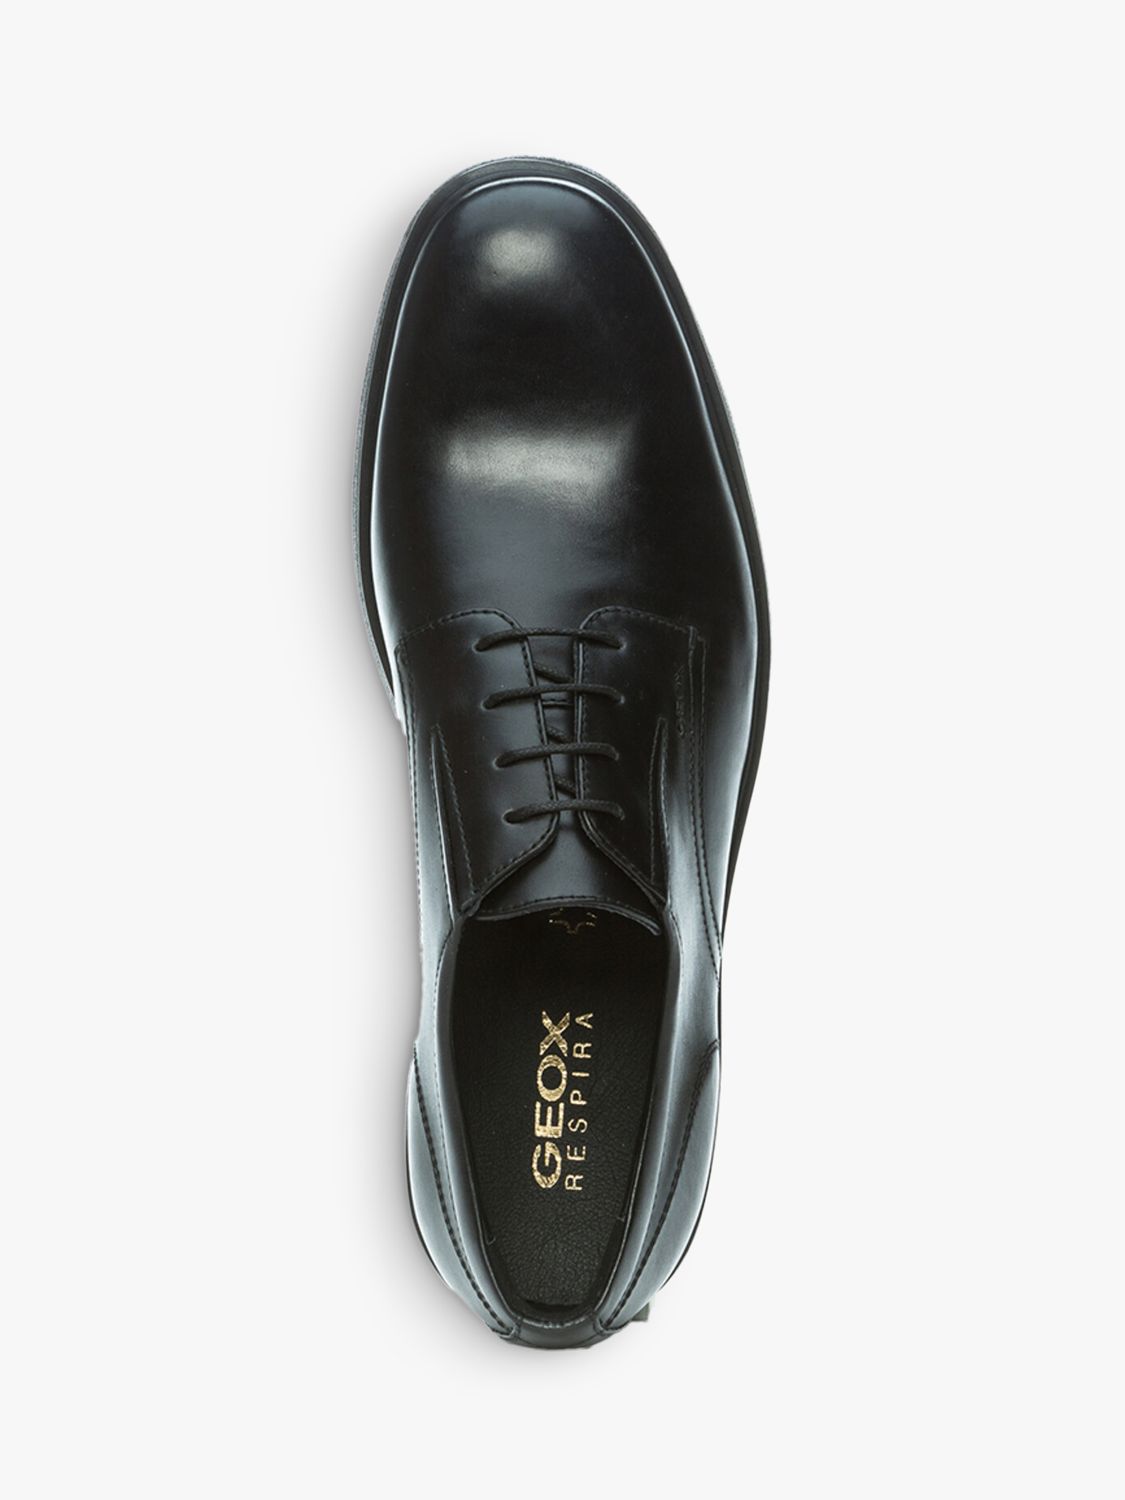 Geox Dublin Shoe for Men